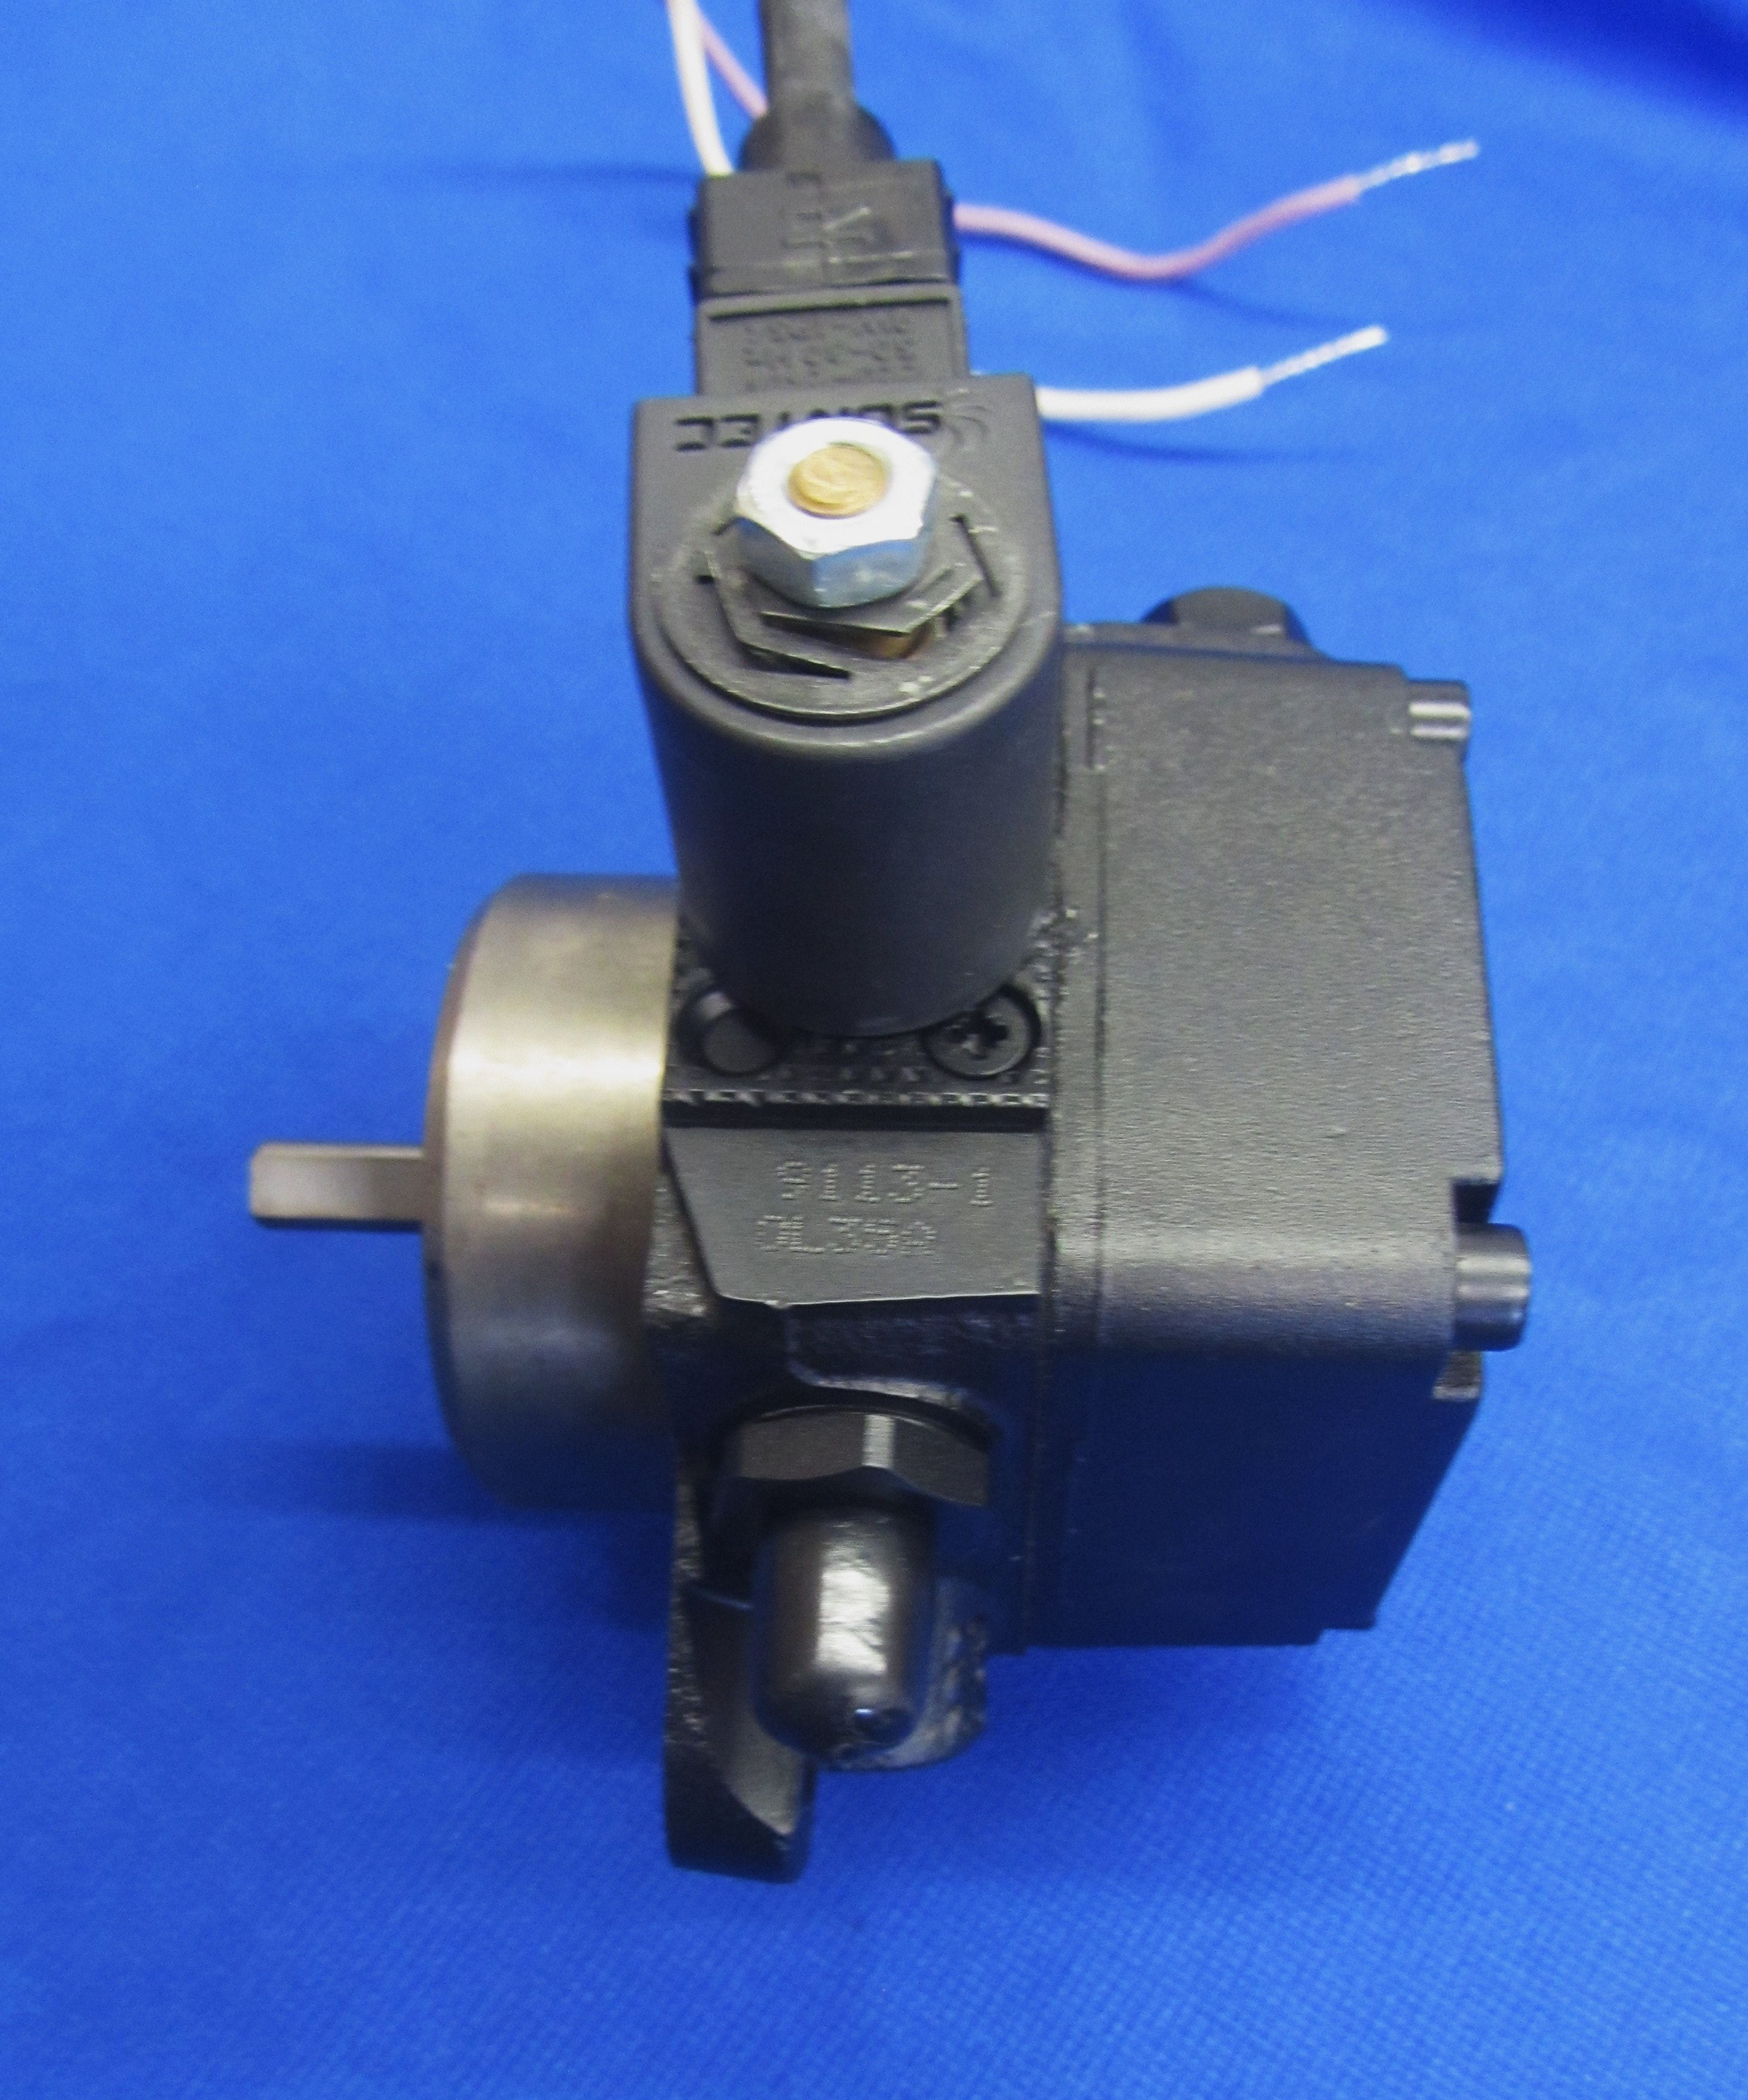 Details about   Suntec OL35 Fuel Pump 079038-120 8.700-760.0 Oil Burner Hot Pressure Washer 120V 